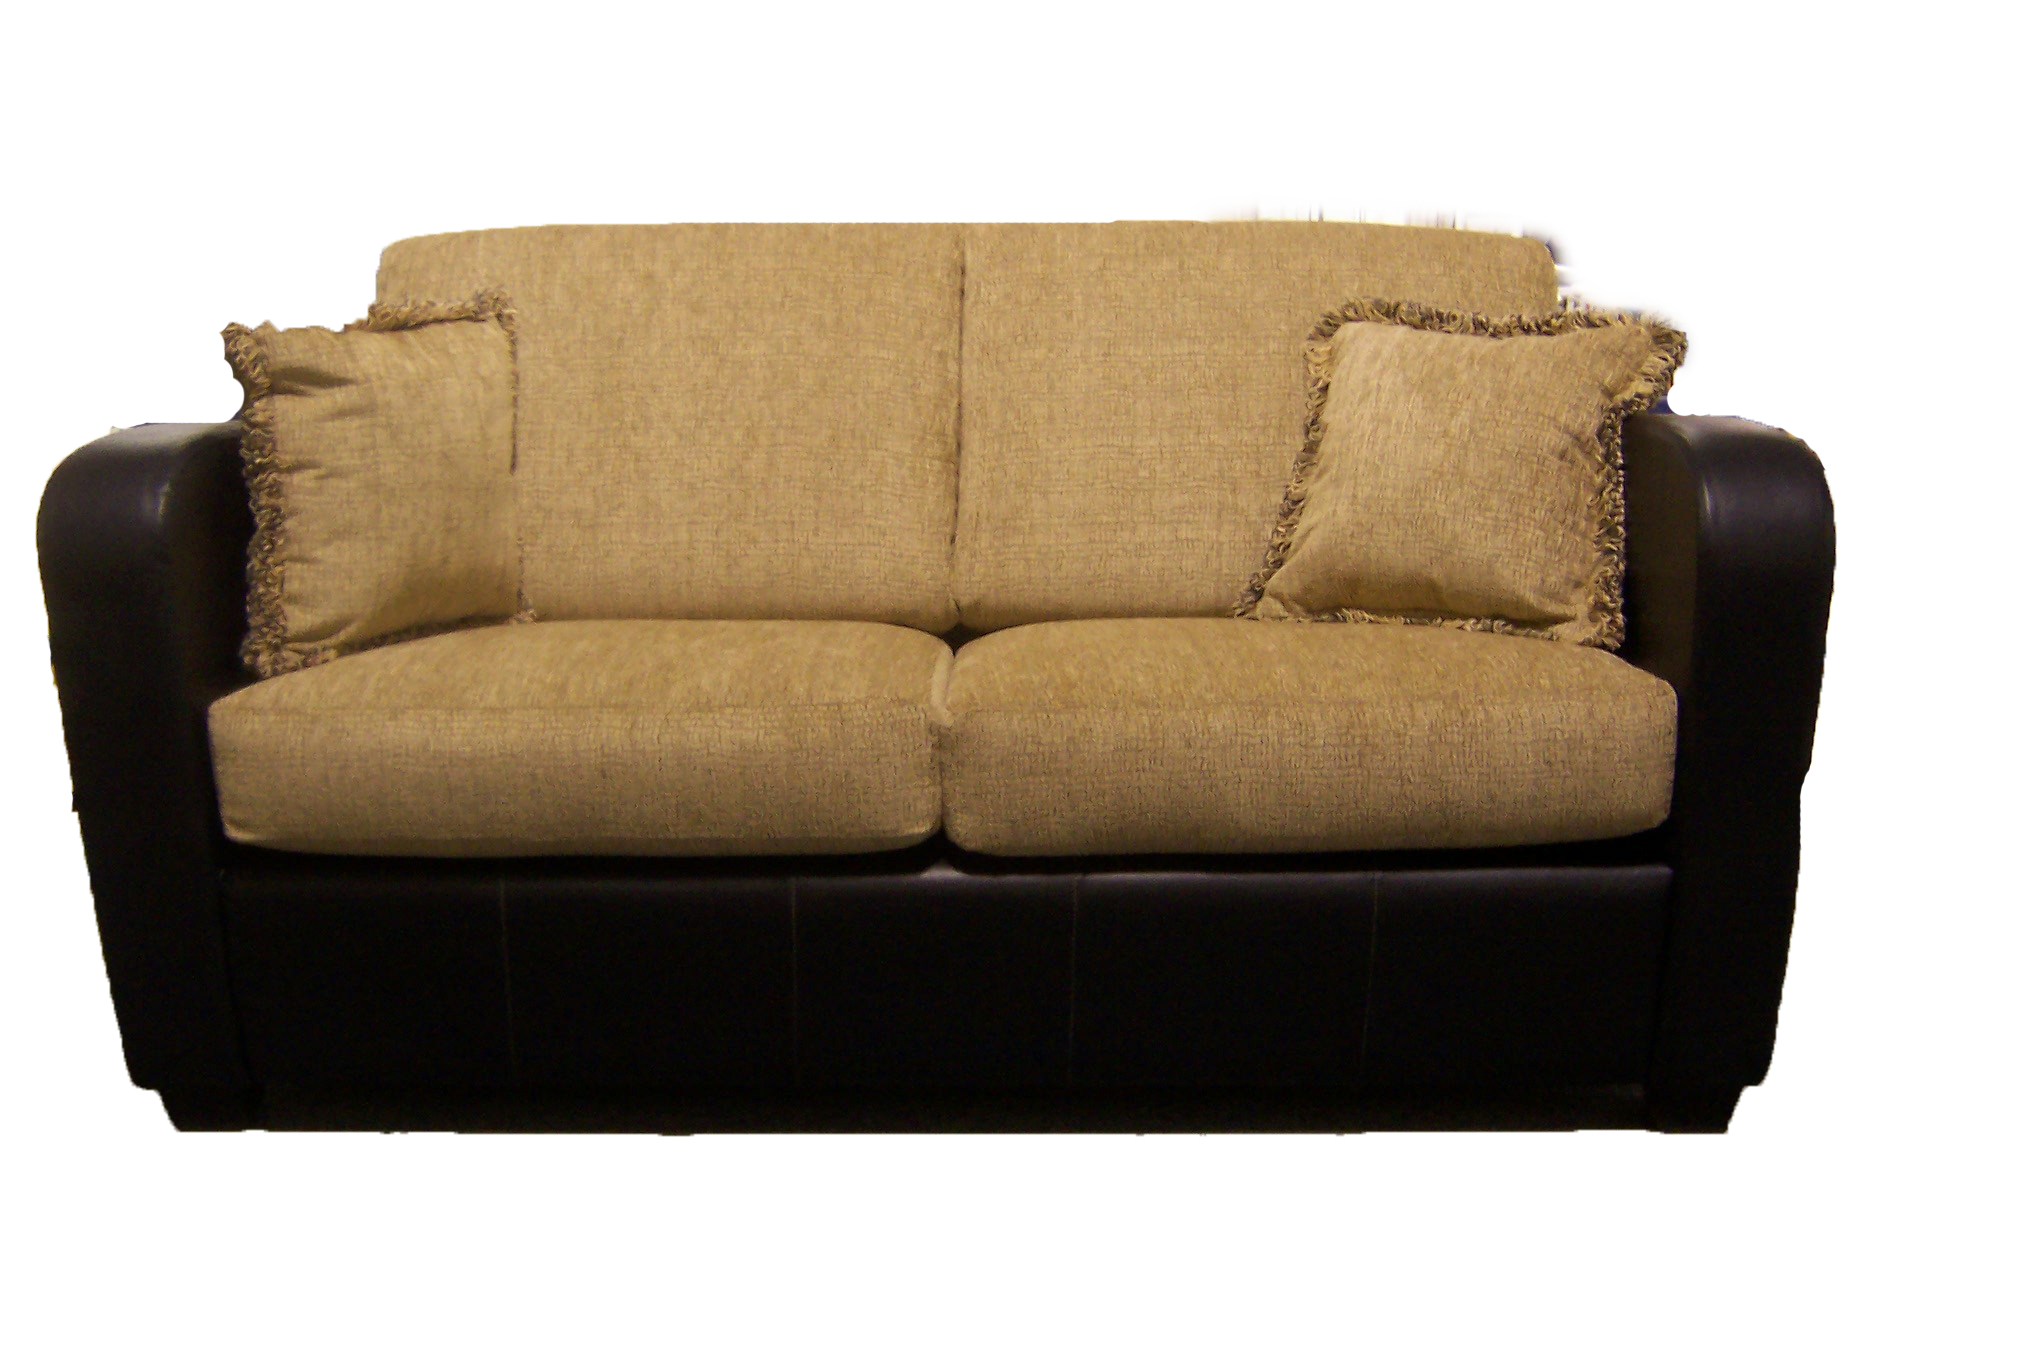 Sofa PNG Transparent Image